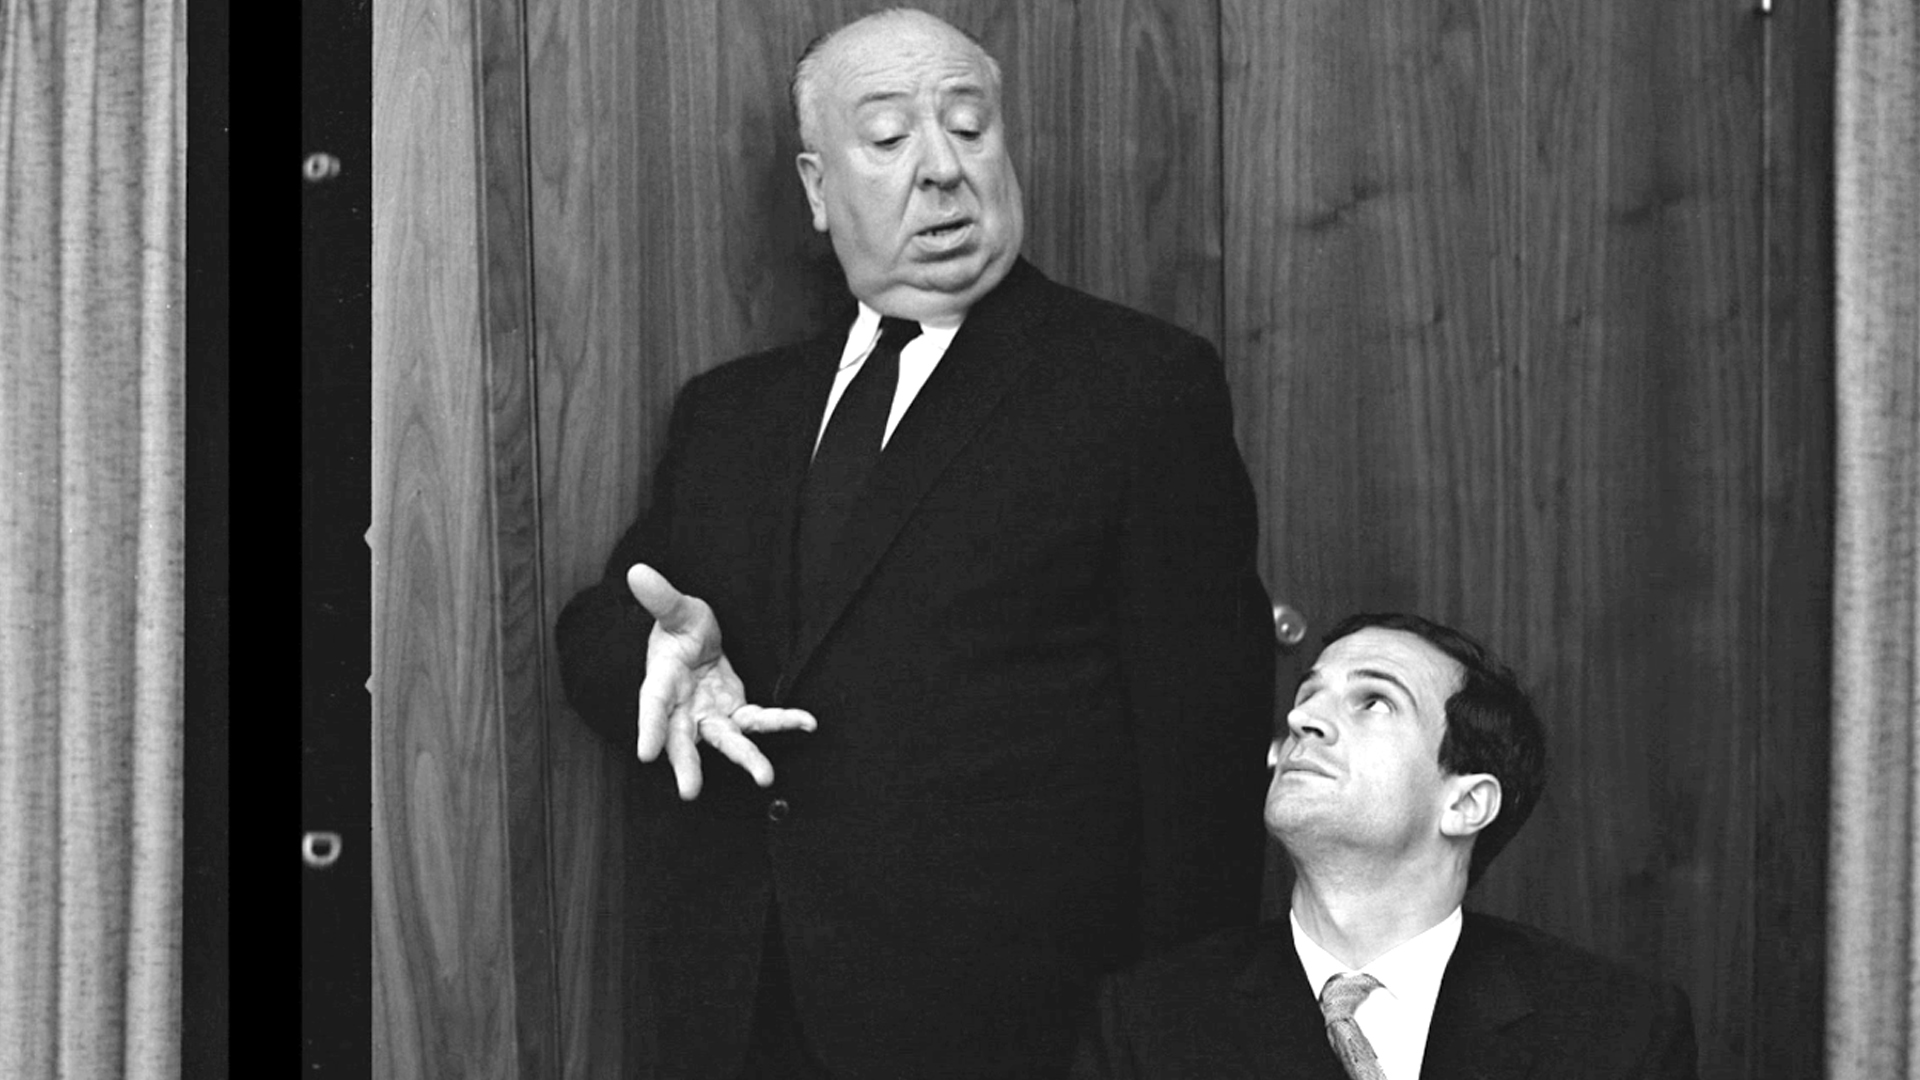 Il cinema secondo Hitchcock – Truffaut intervista Hitchcock